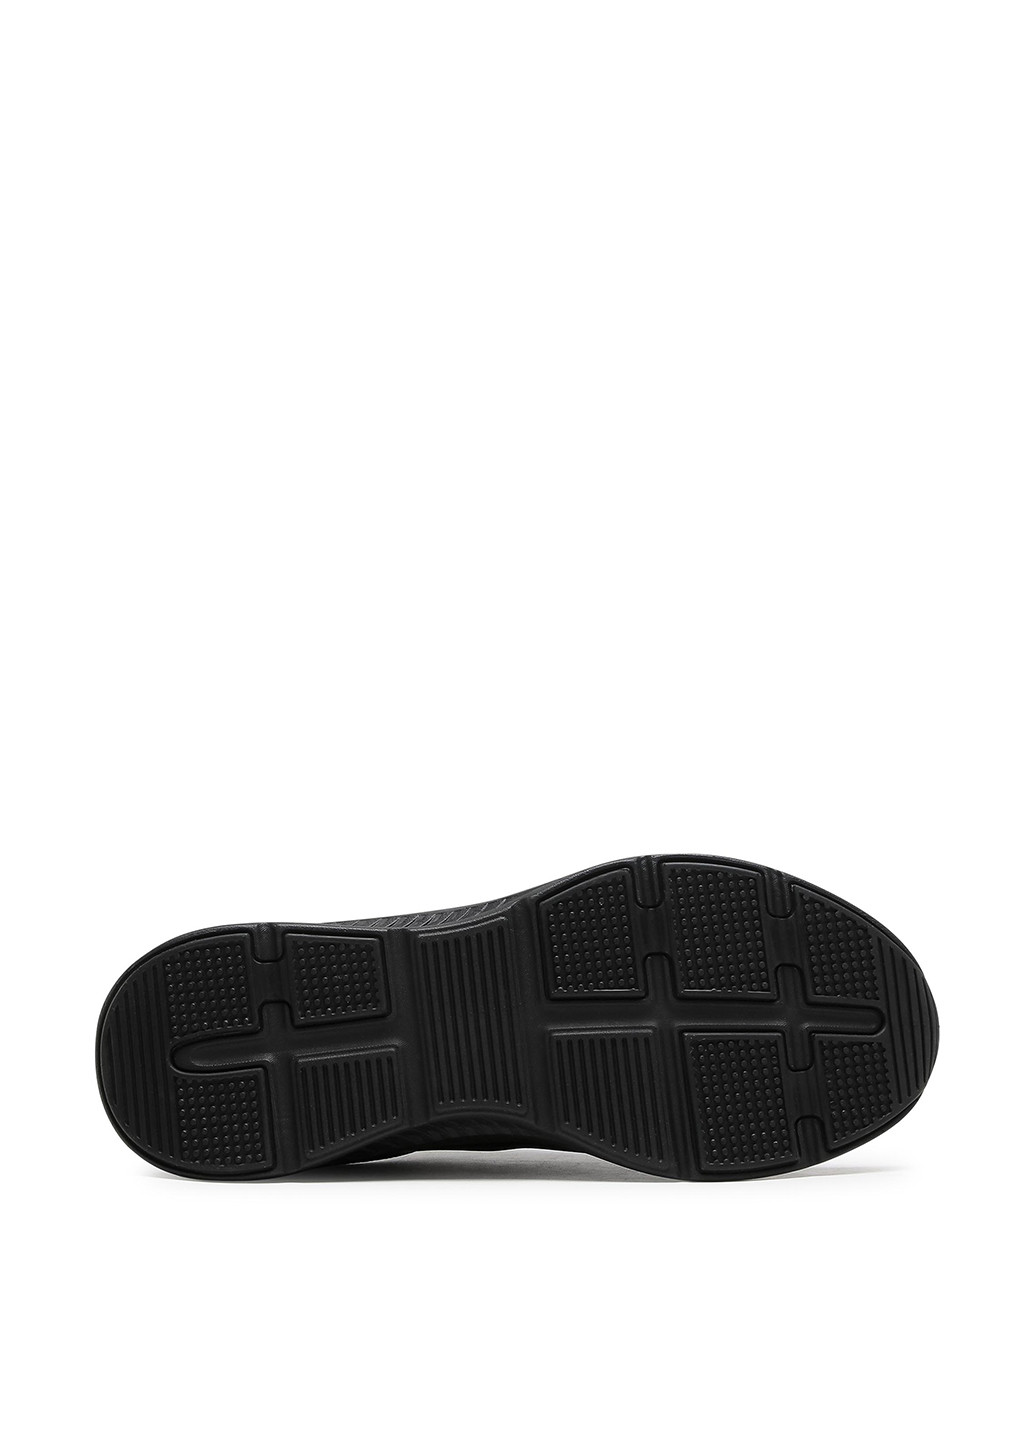 Черные демисезонные кросівки mp07-01405-03 Sprandi